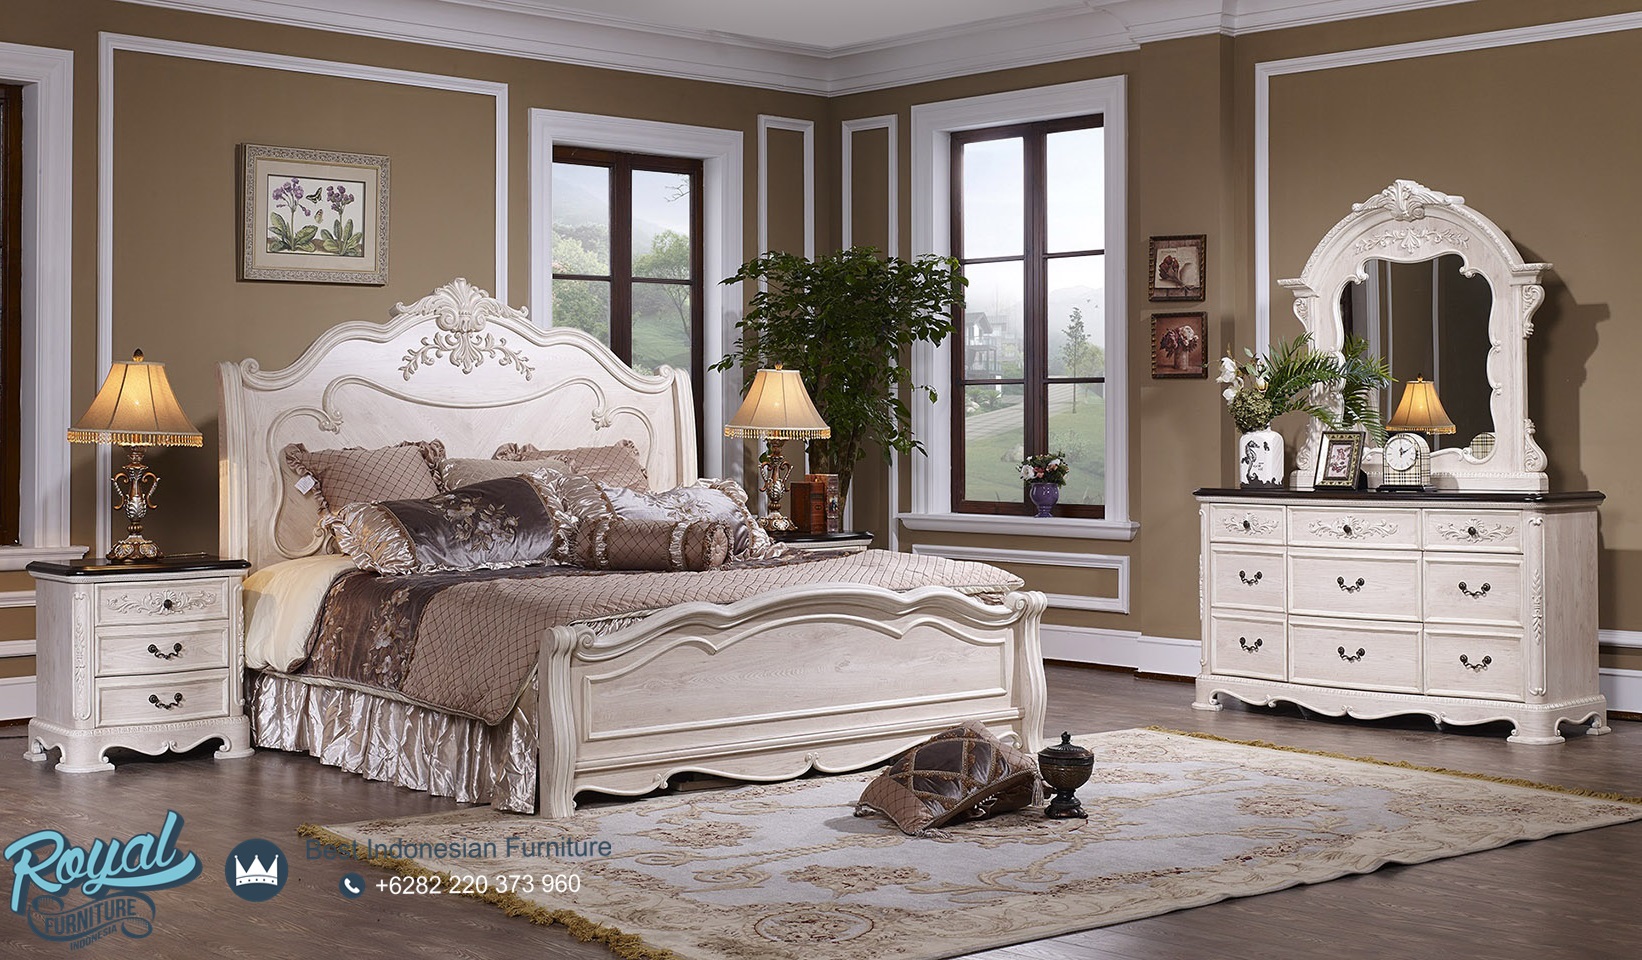 Tempat Tidur Mewah Jepara Modern Putih Duco Royal Furniture